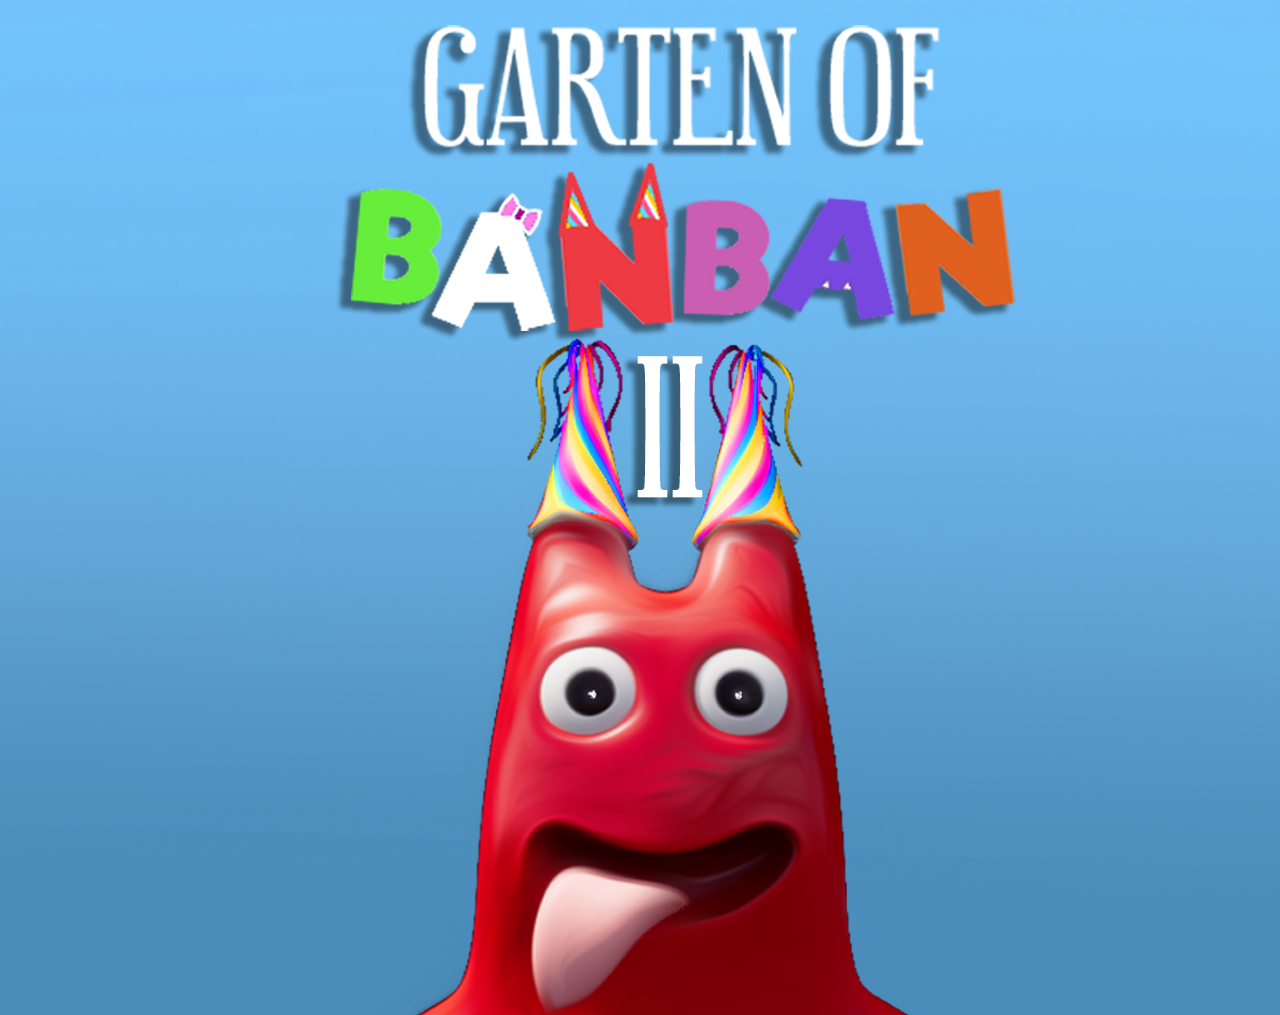 Garten of banban 2 by Ghoulishcutie on DeviantArt